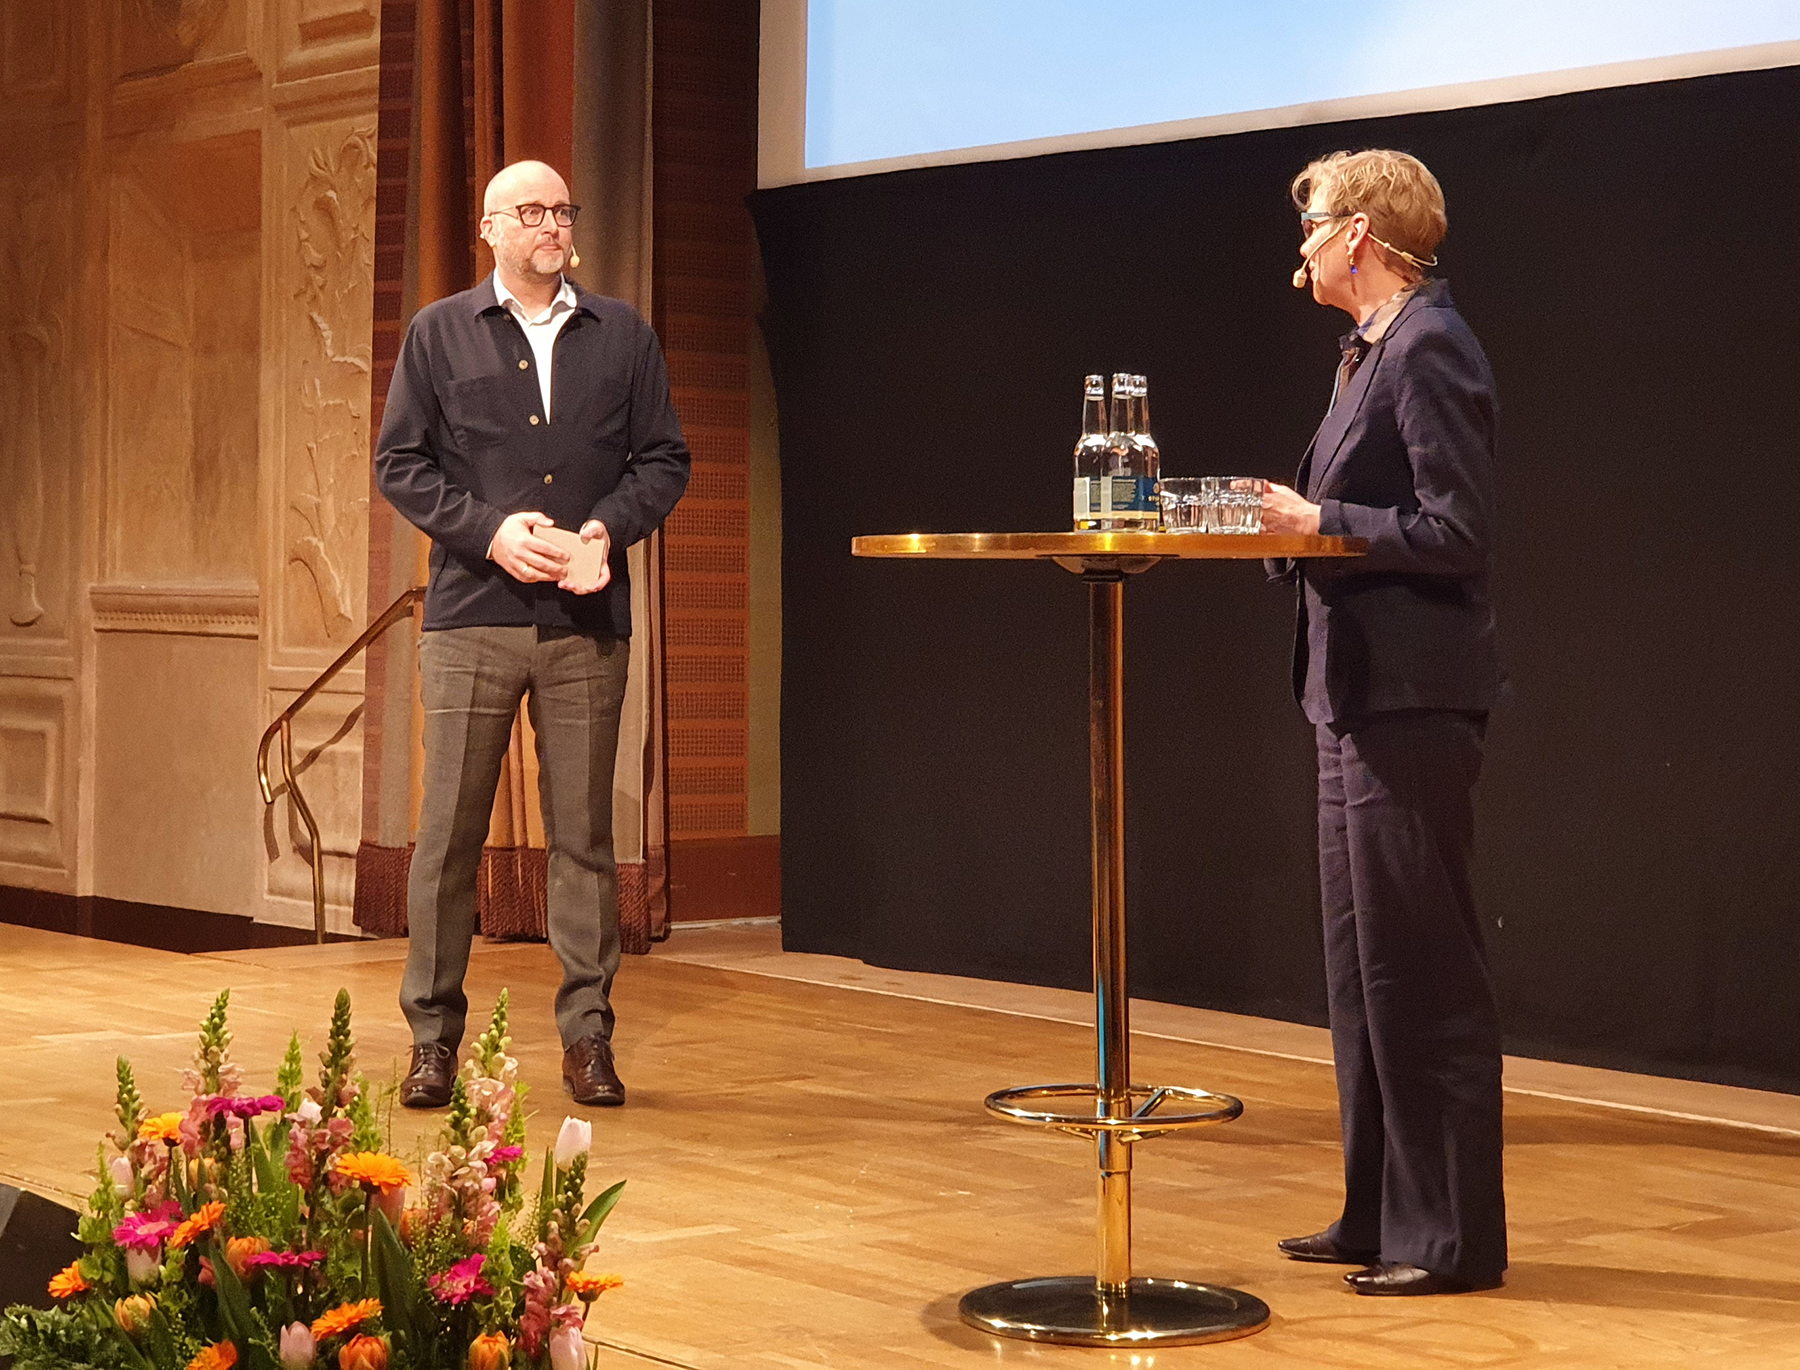 Foto: Dagens moderator, Johan Quist, forskare vid Centrum för tjänsteforskning och Annelie Roswall Ljunggren, generaldirektör, Statskontoret.